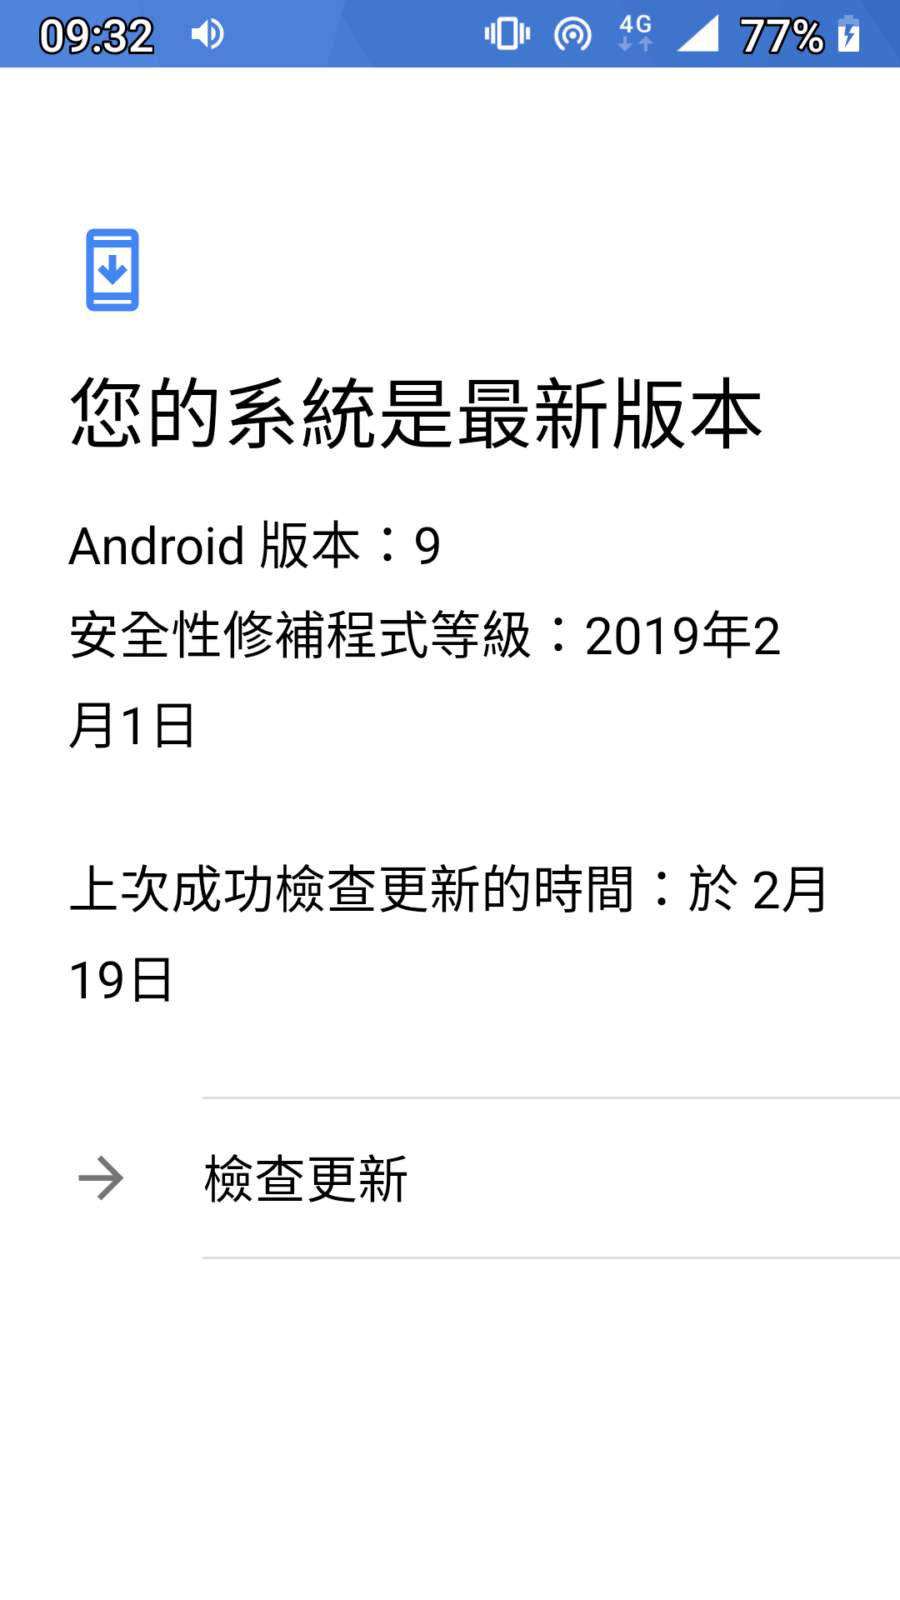 [ 3C ] – NOKIA 6 更新至 Android 9 Pie